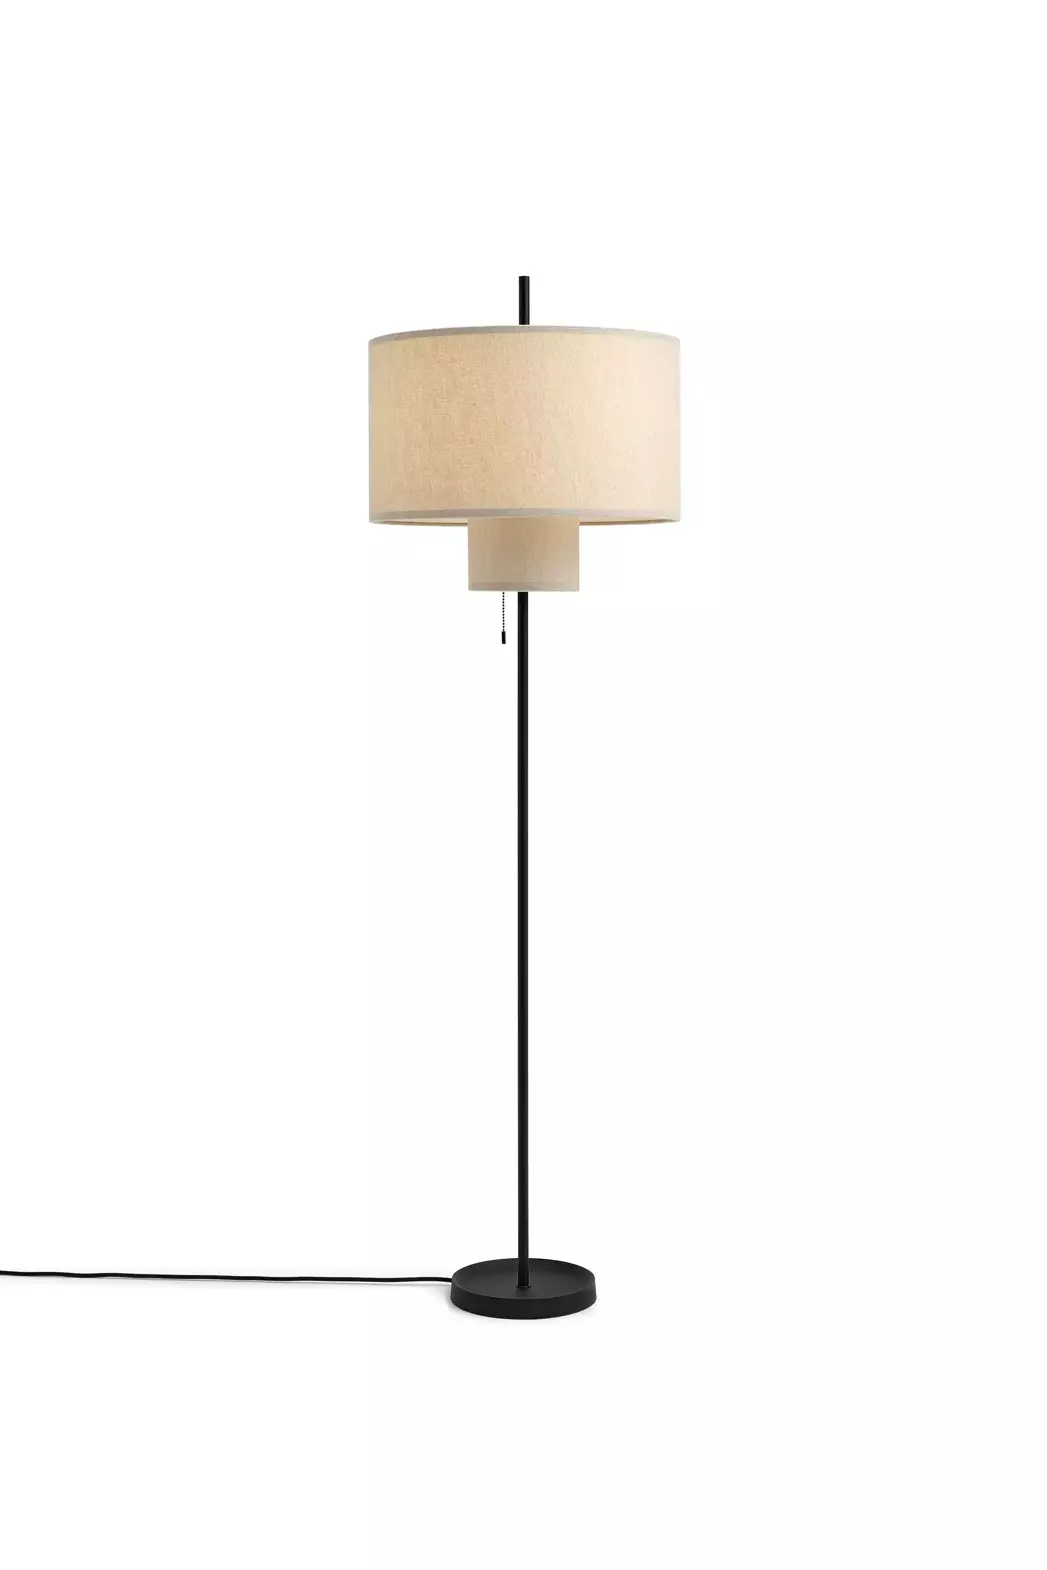 New Works :: Lampa podłogowa Margin beżowa wys. 143 cm